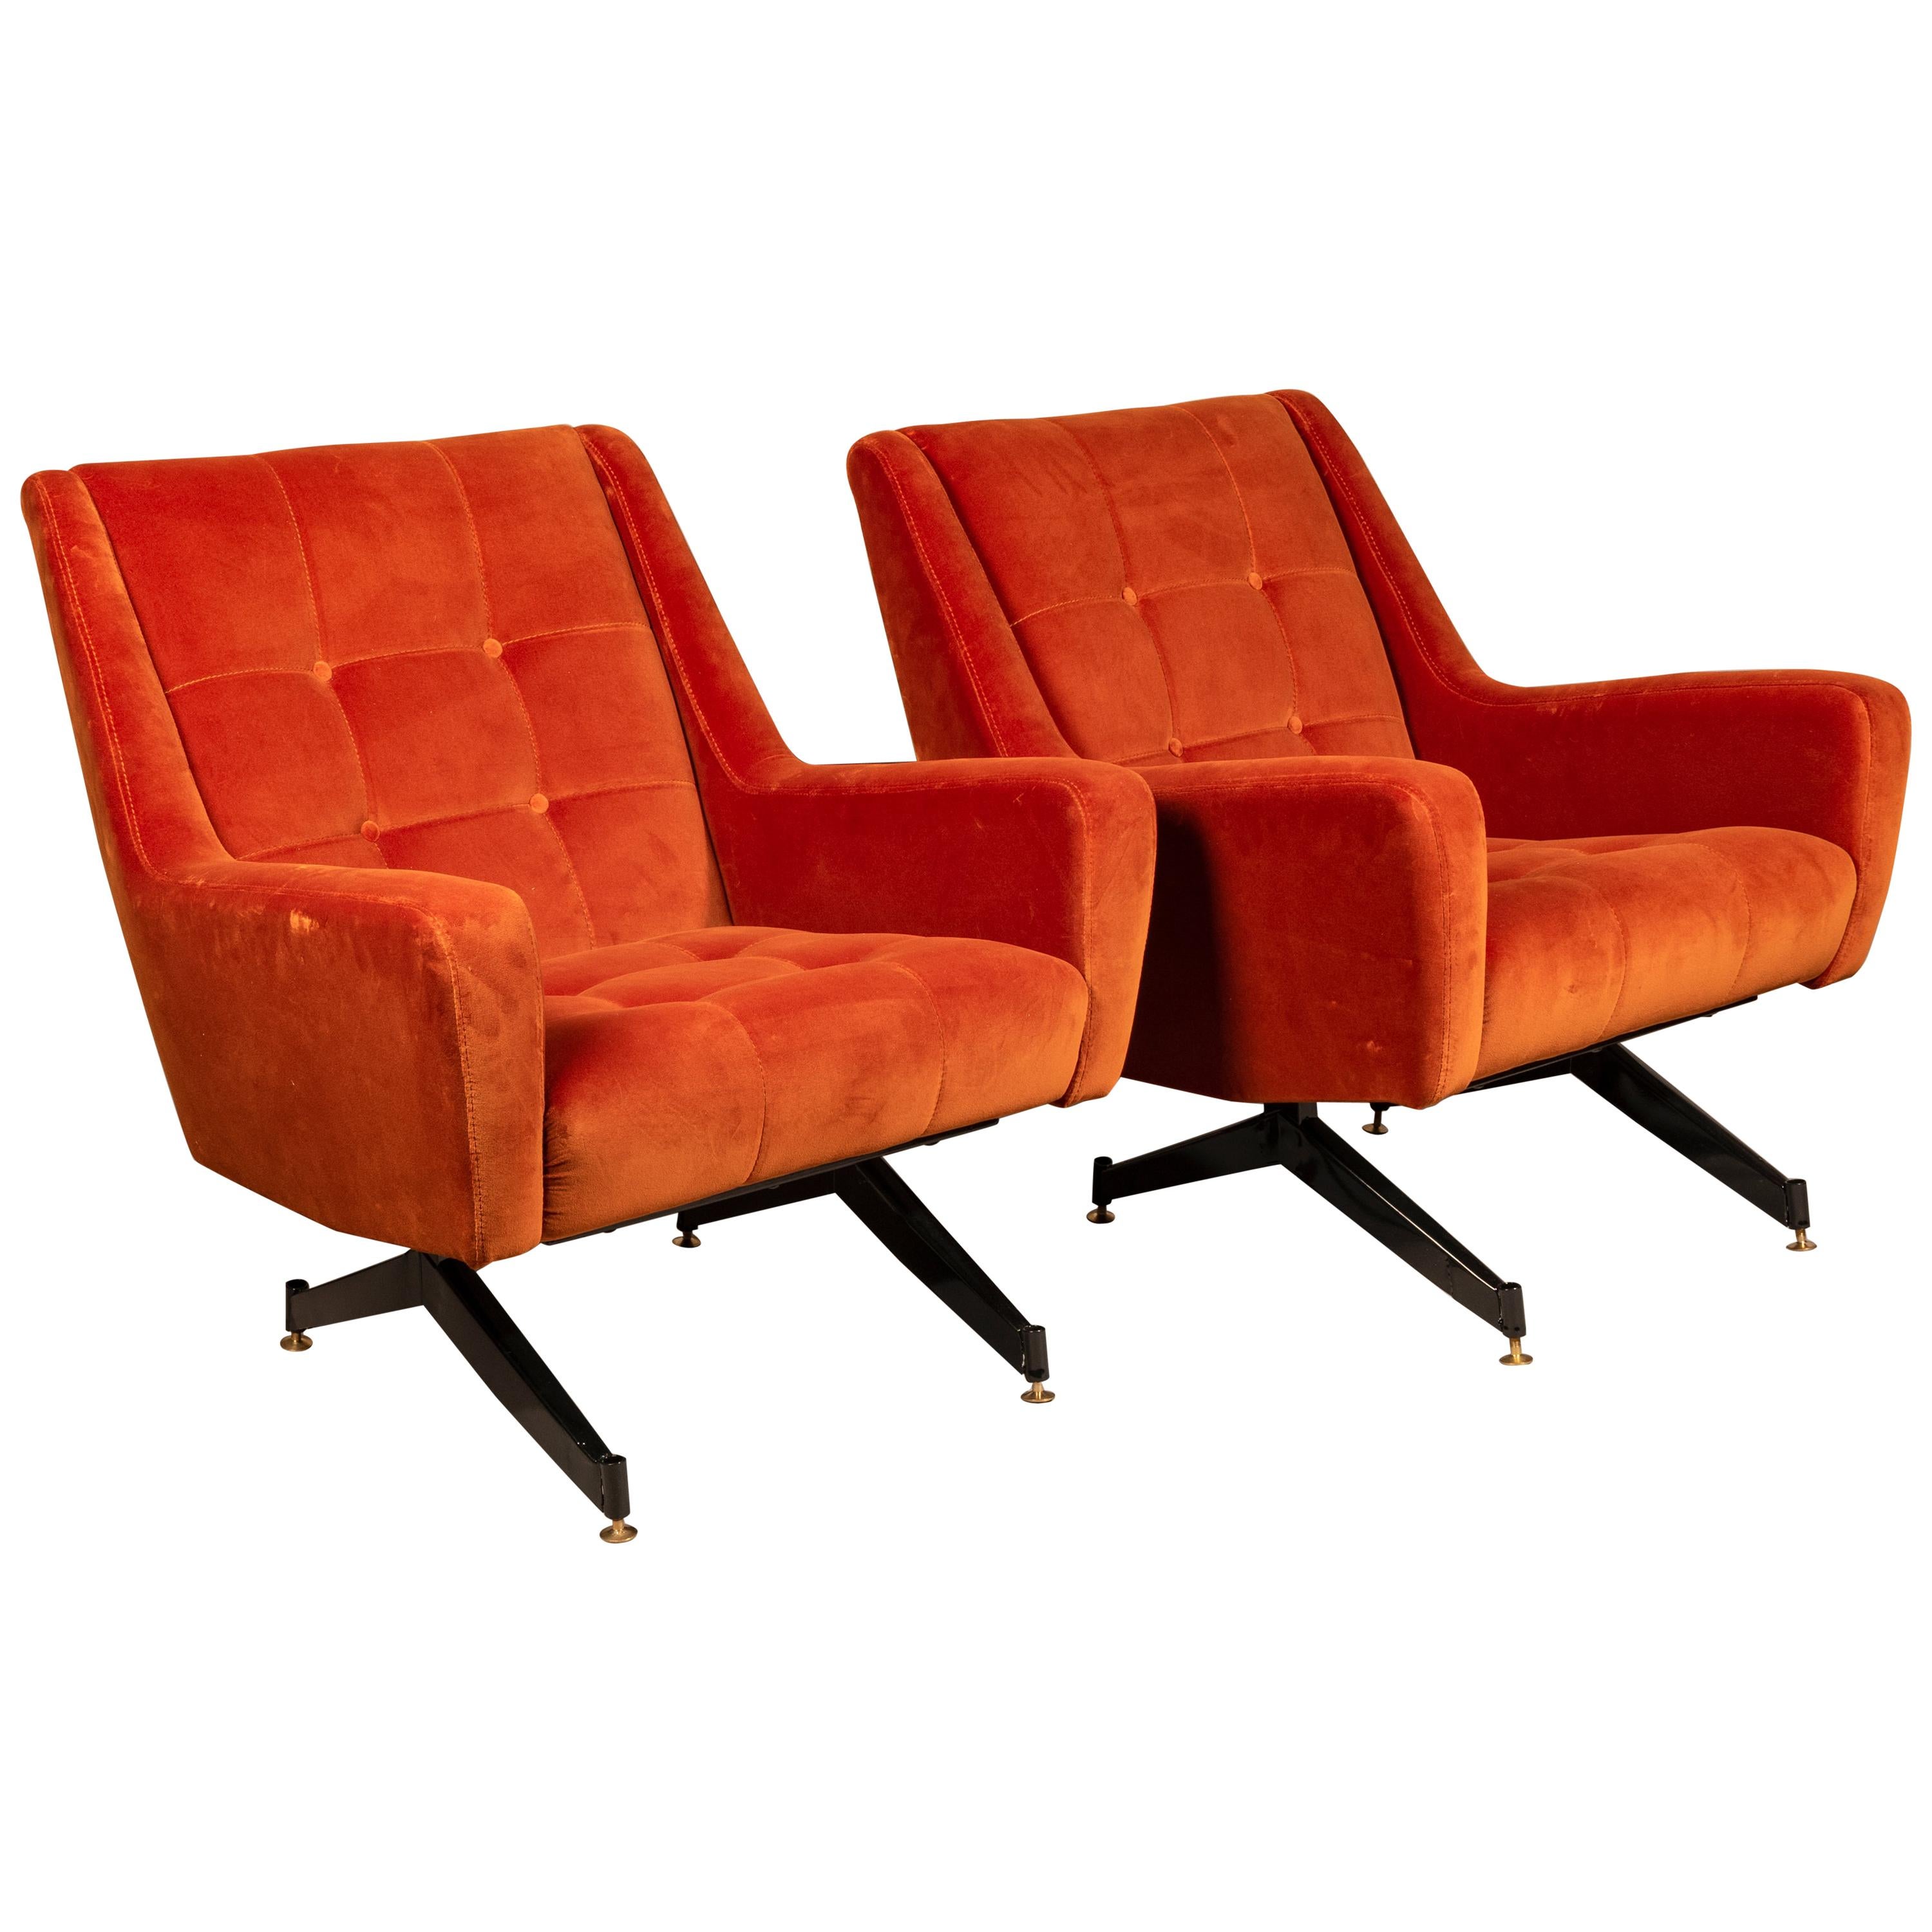 Lounge Chairs in Osvaldo Borsani Style, Italy, 1950s